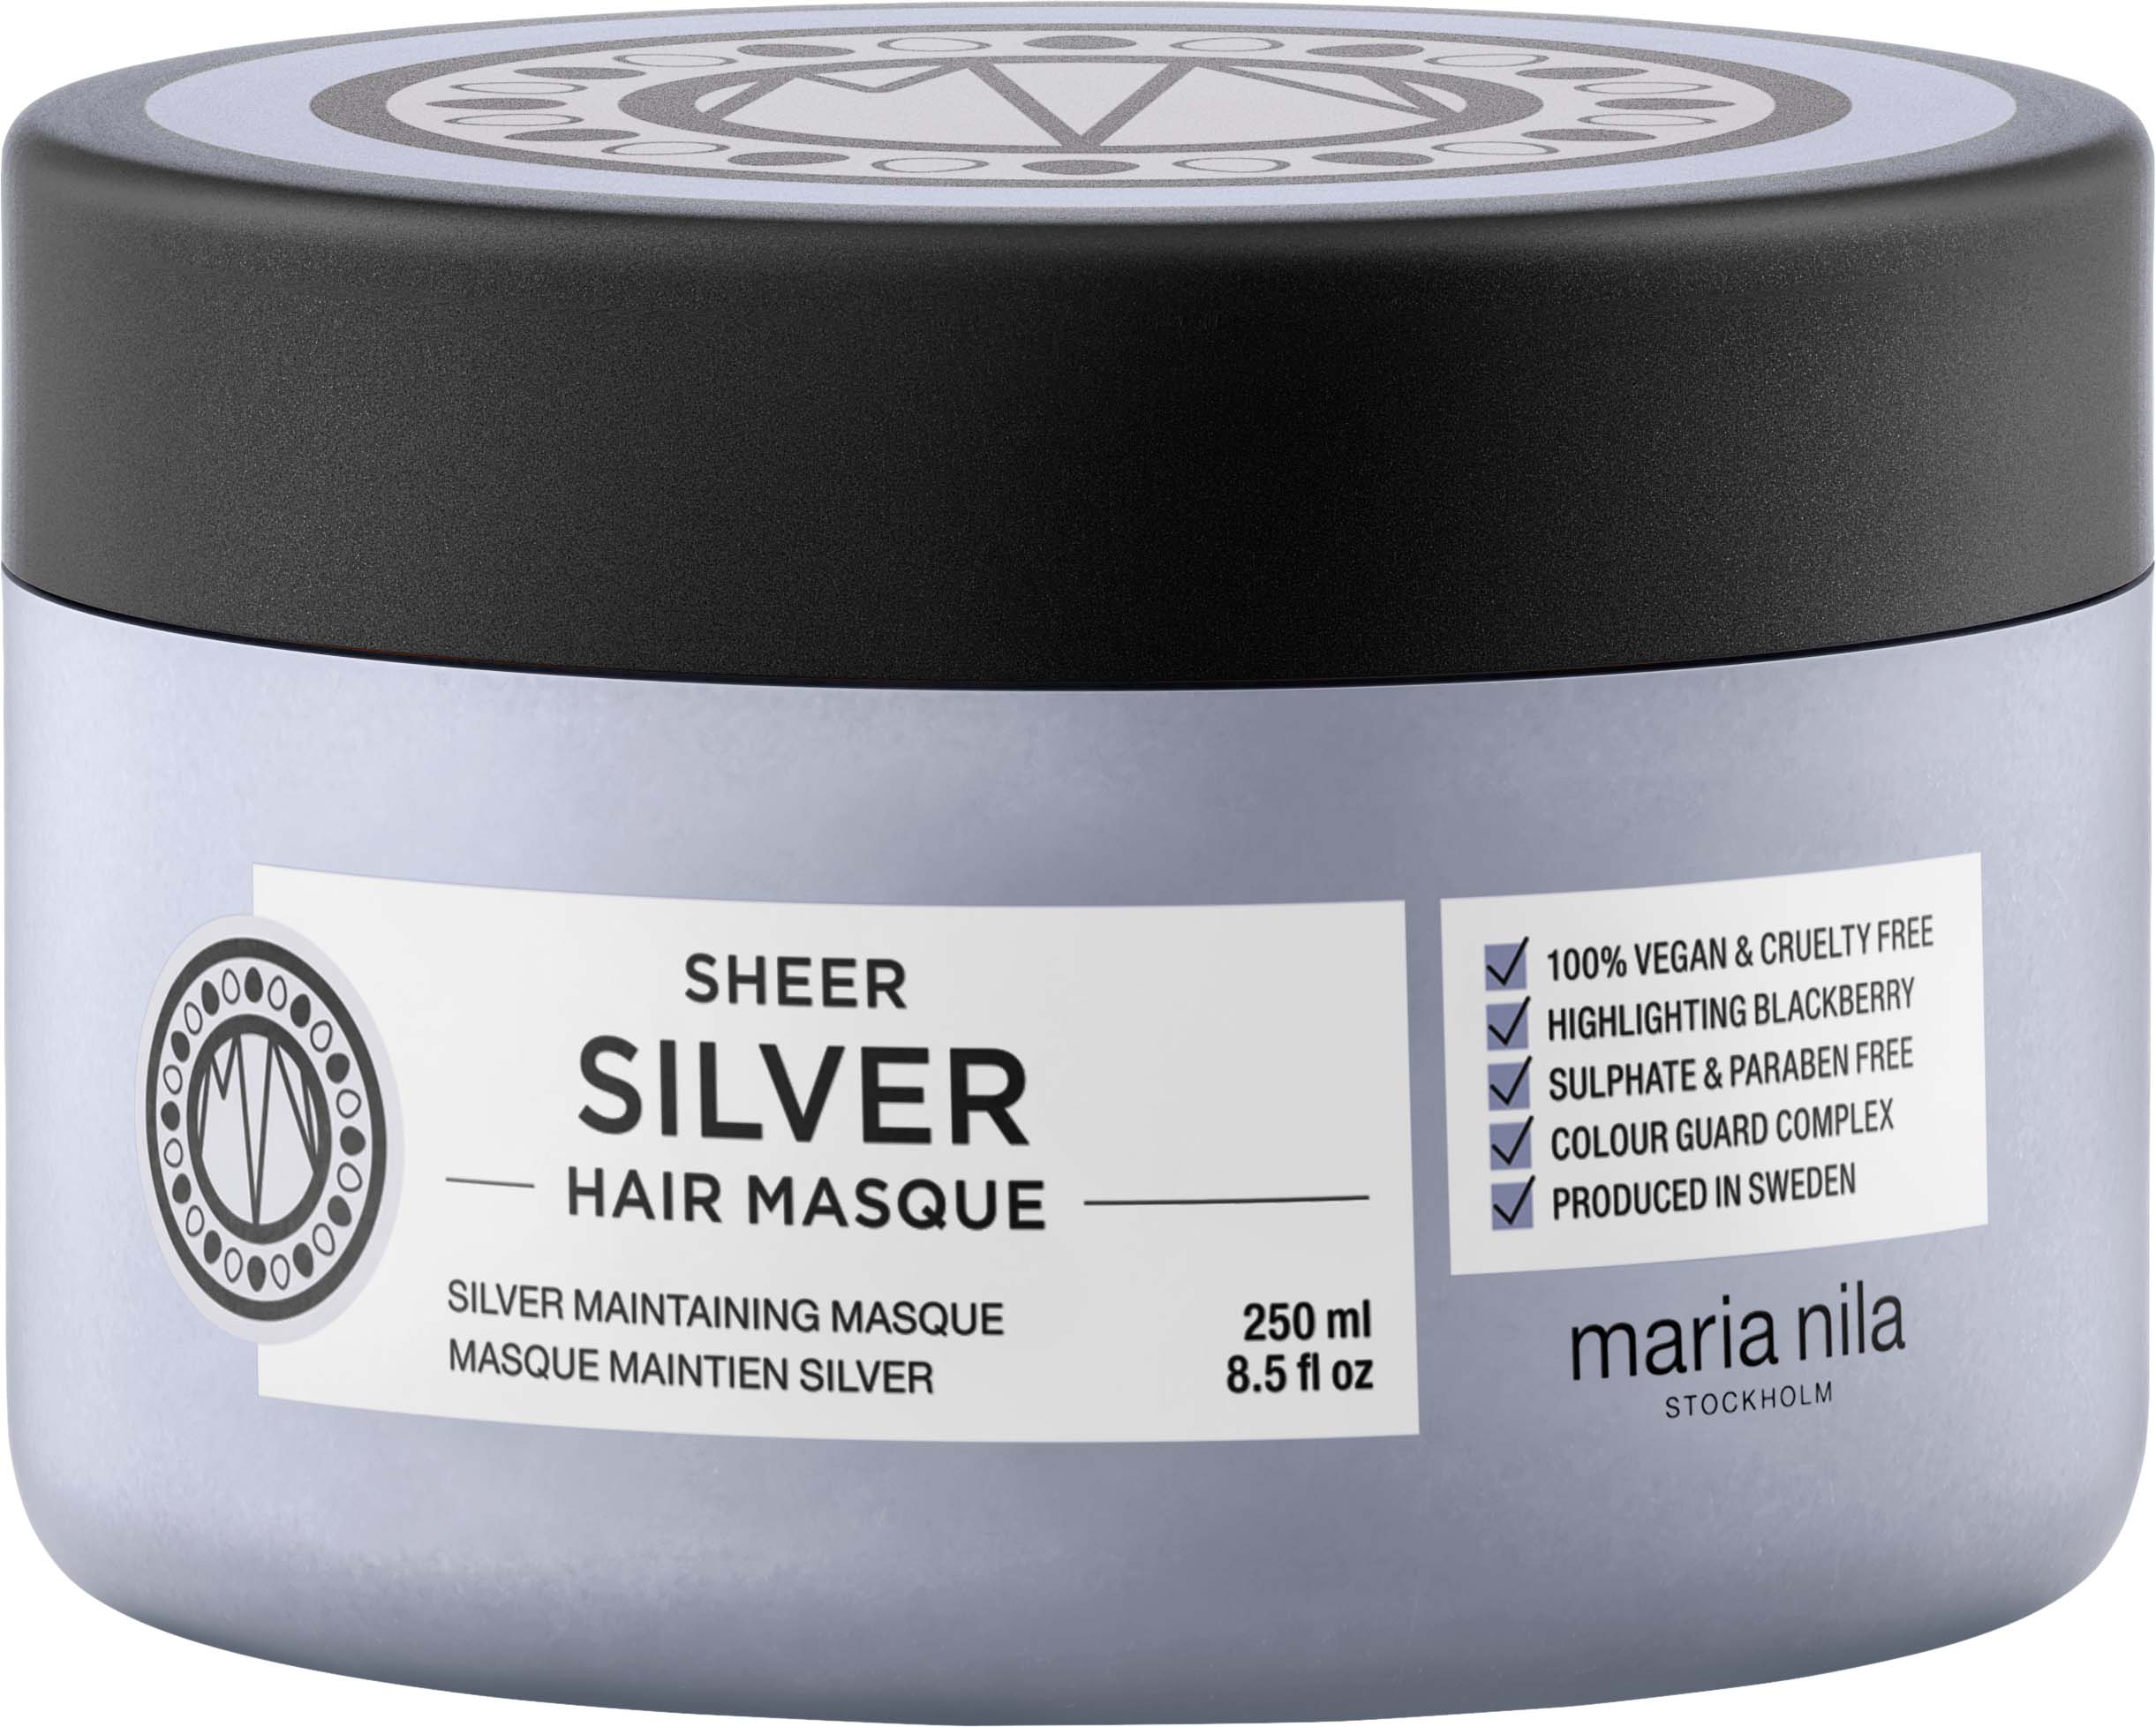 maria nila Sheer Silver Masque 250 ml 